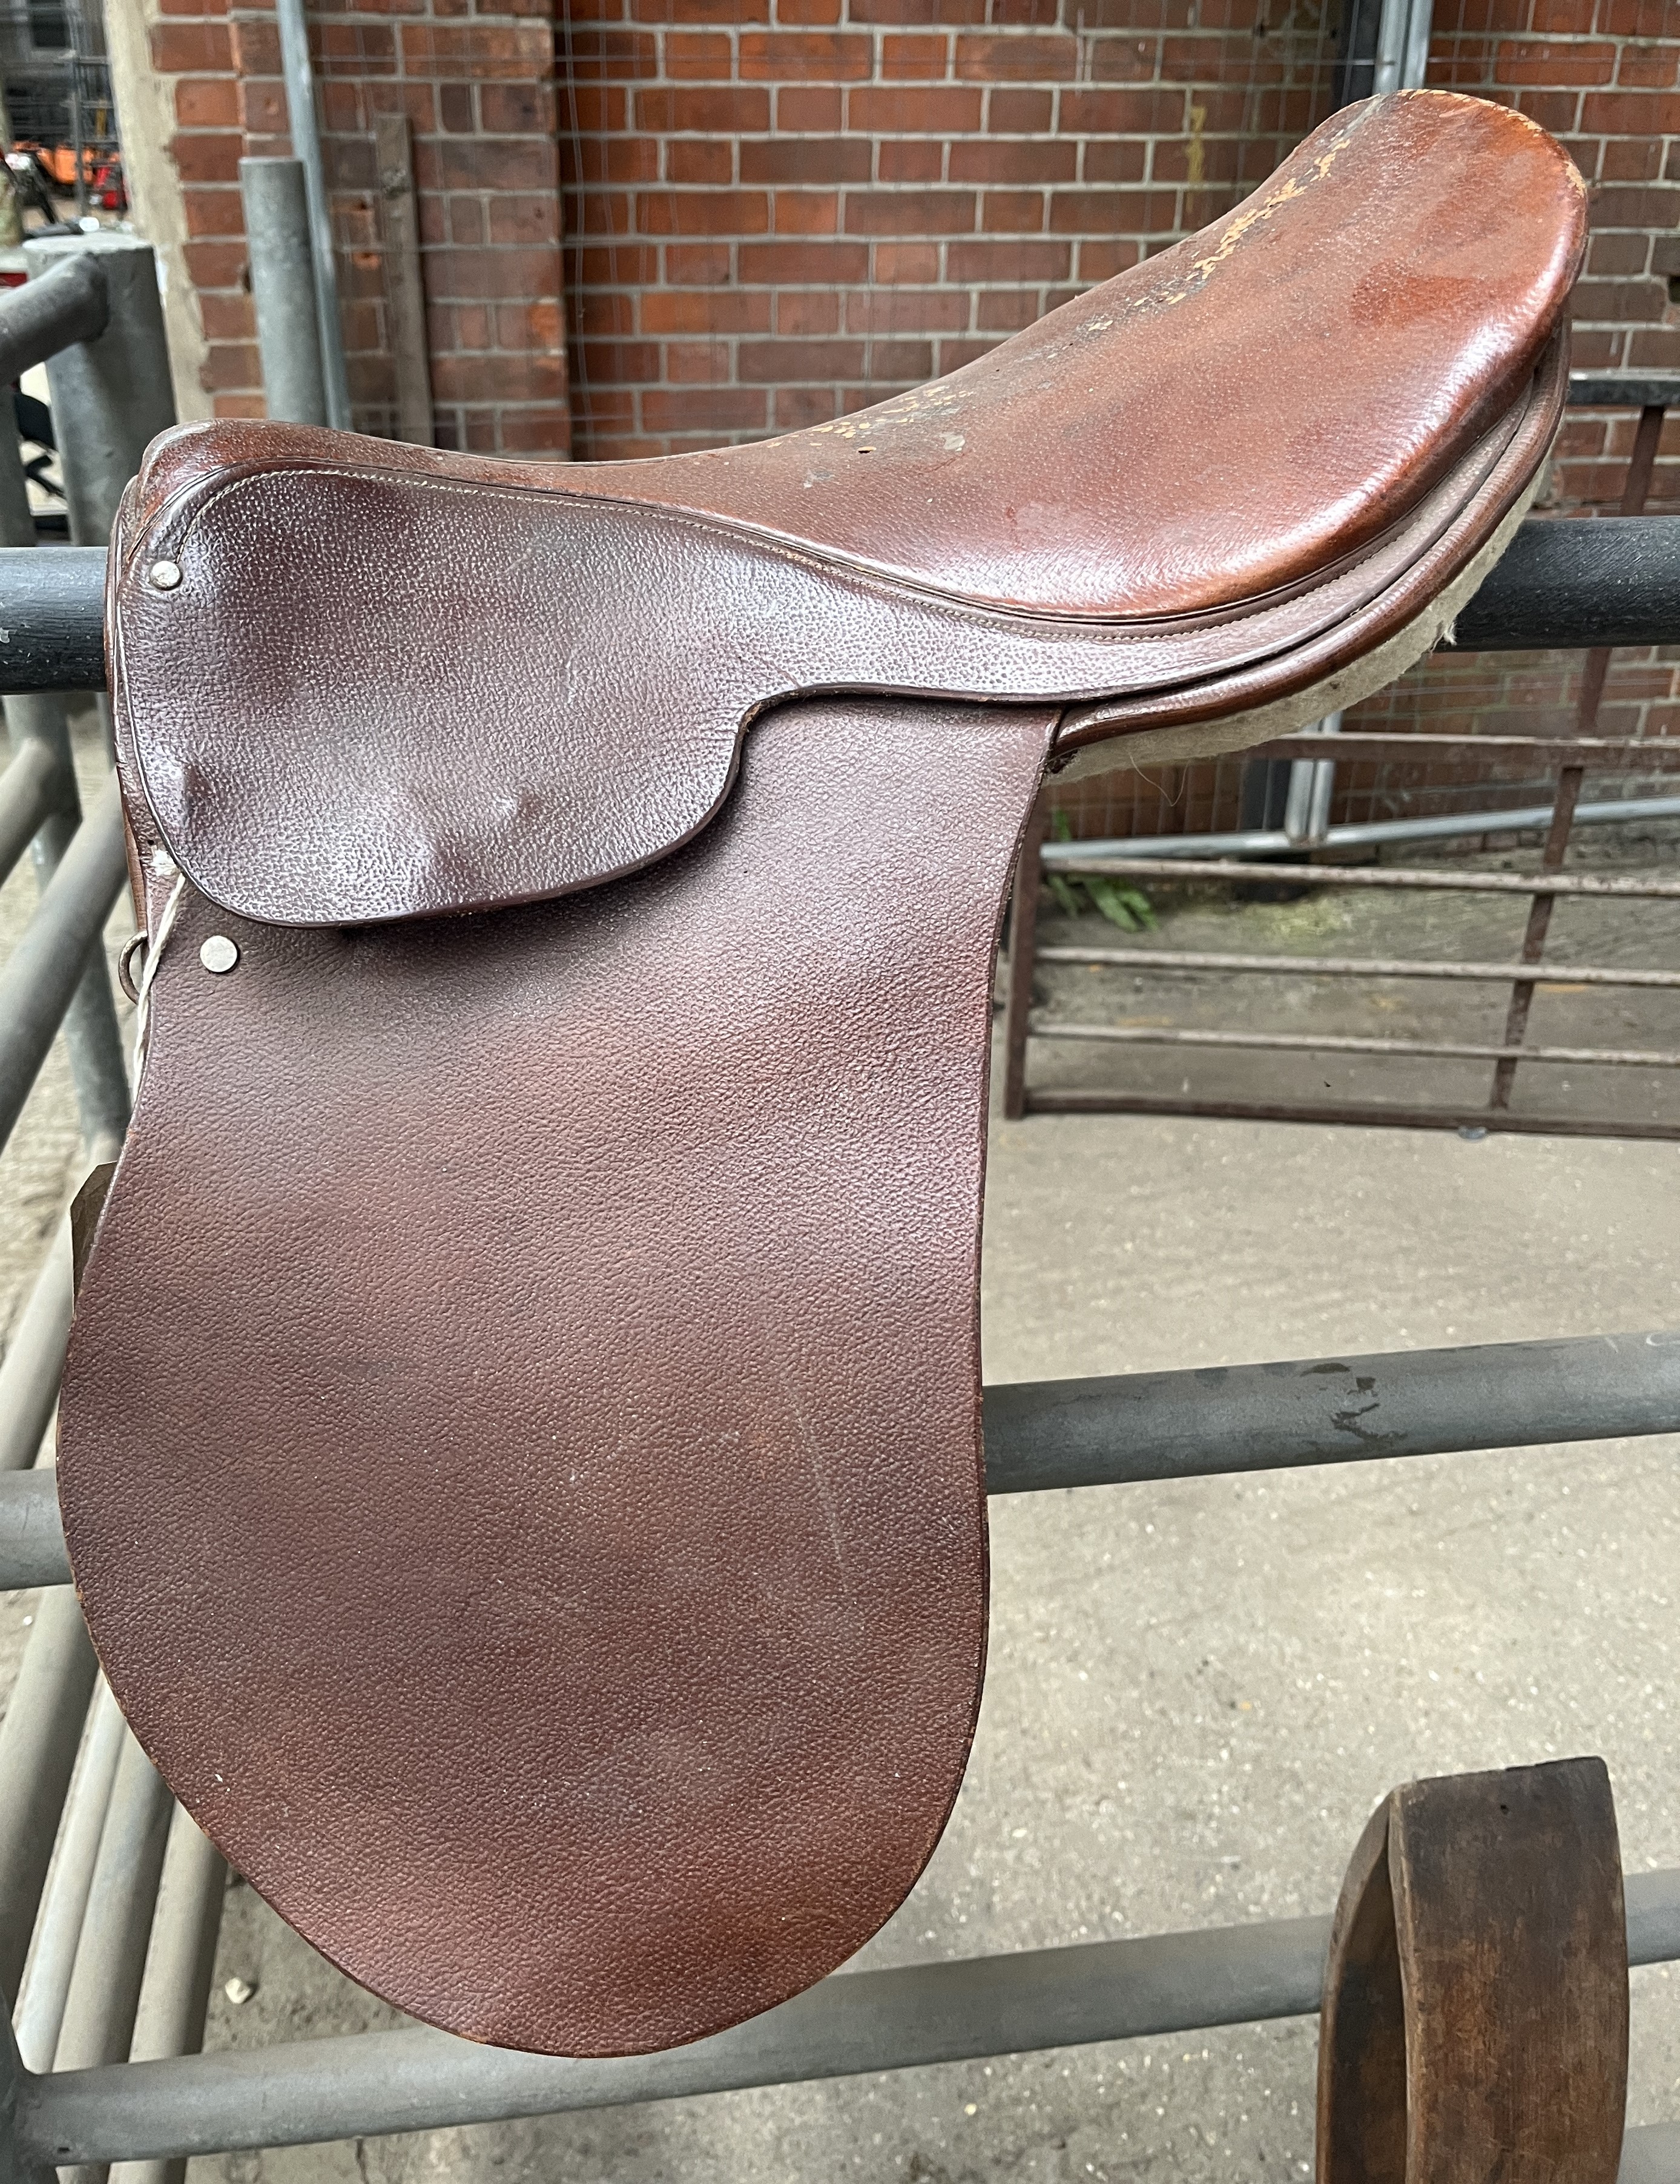 16" vintage hunting saddle